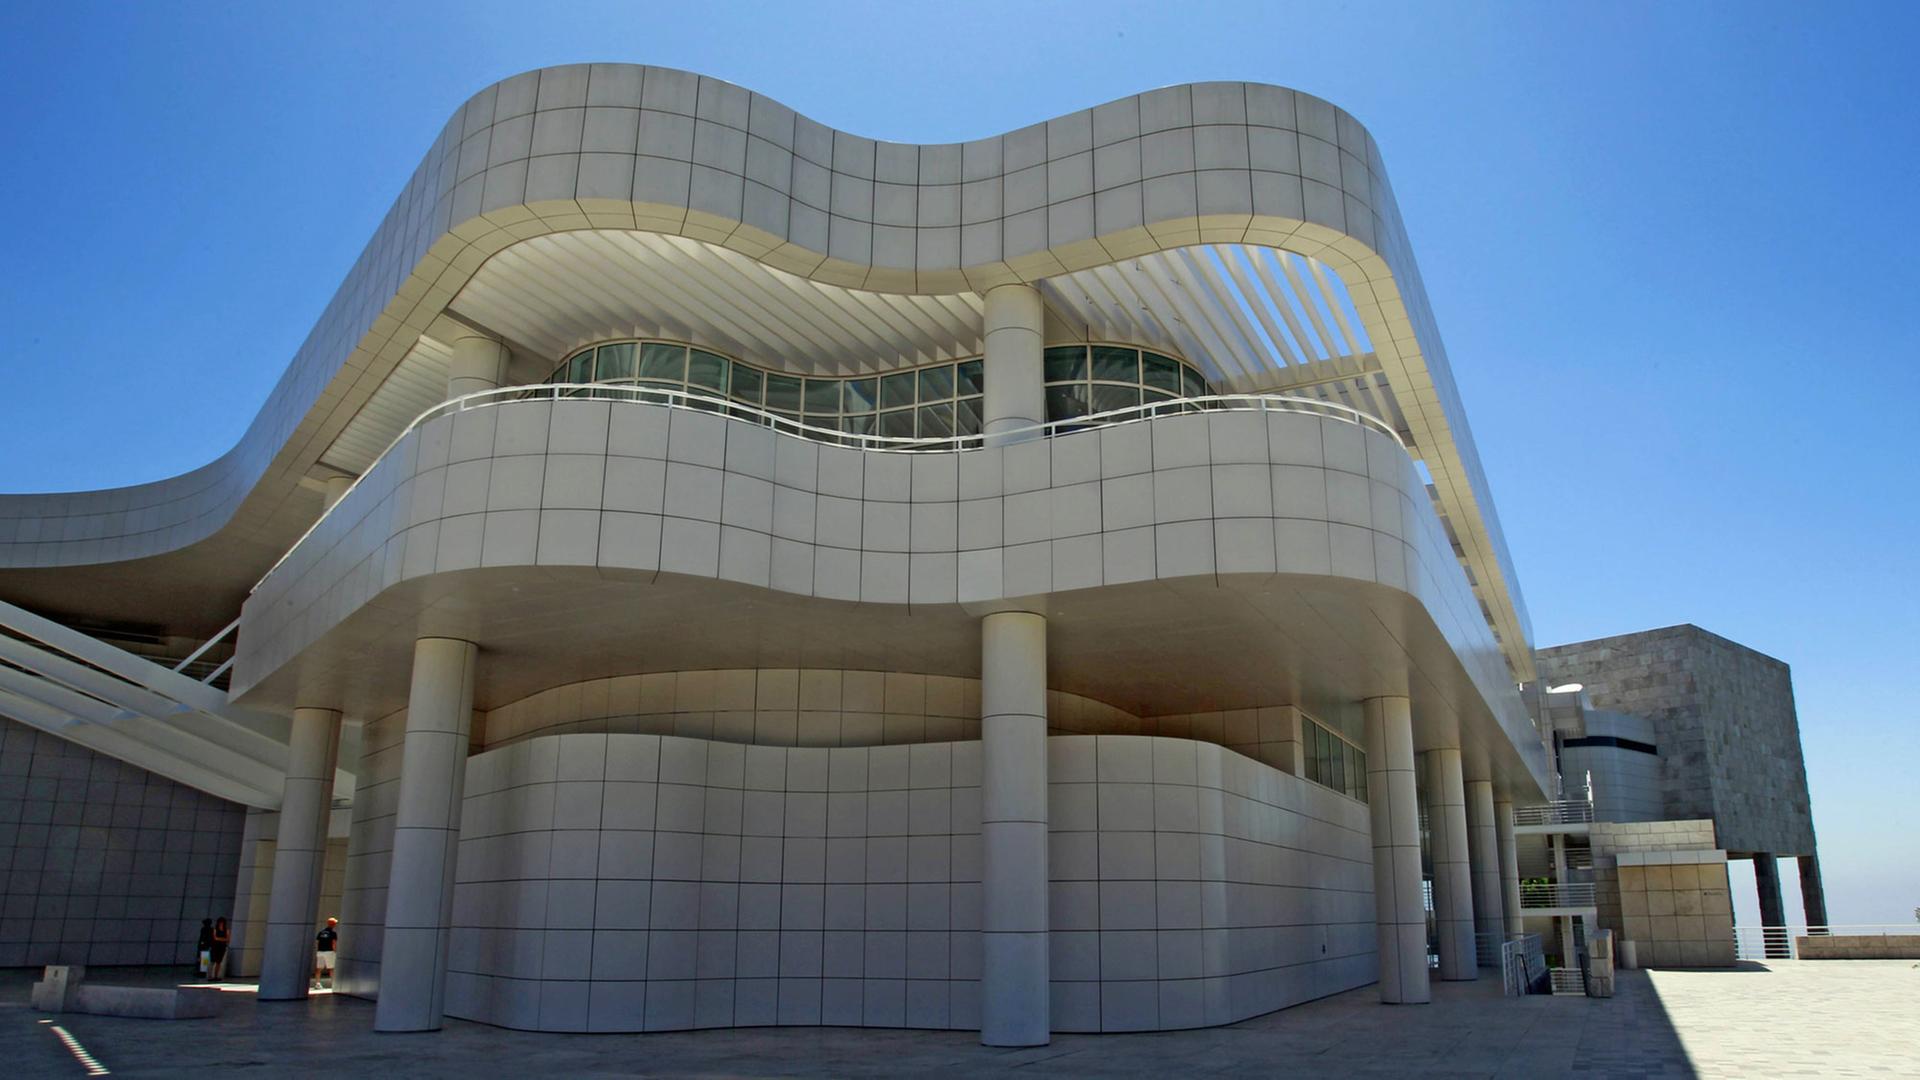 Das Getty Center in Los Angeles, Kalifornien: Neben dem Kunstmuseum befinden sich hier der Sitz des J. Paul Getty Trusts, das Getty Research Institute und das Getty Conservation Institute. Erbaut wurde es nach einem Entwurf des Architekten Richard Meier in den Jahren 1991-1997.